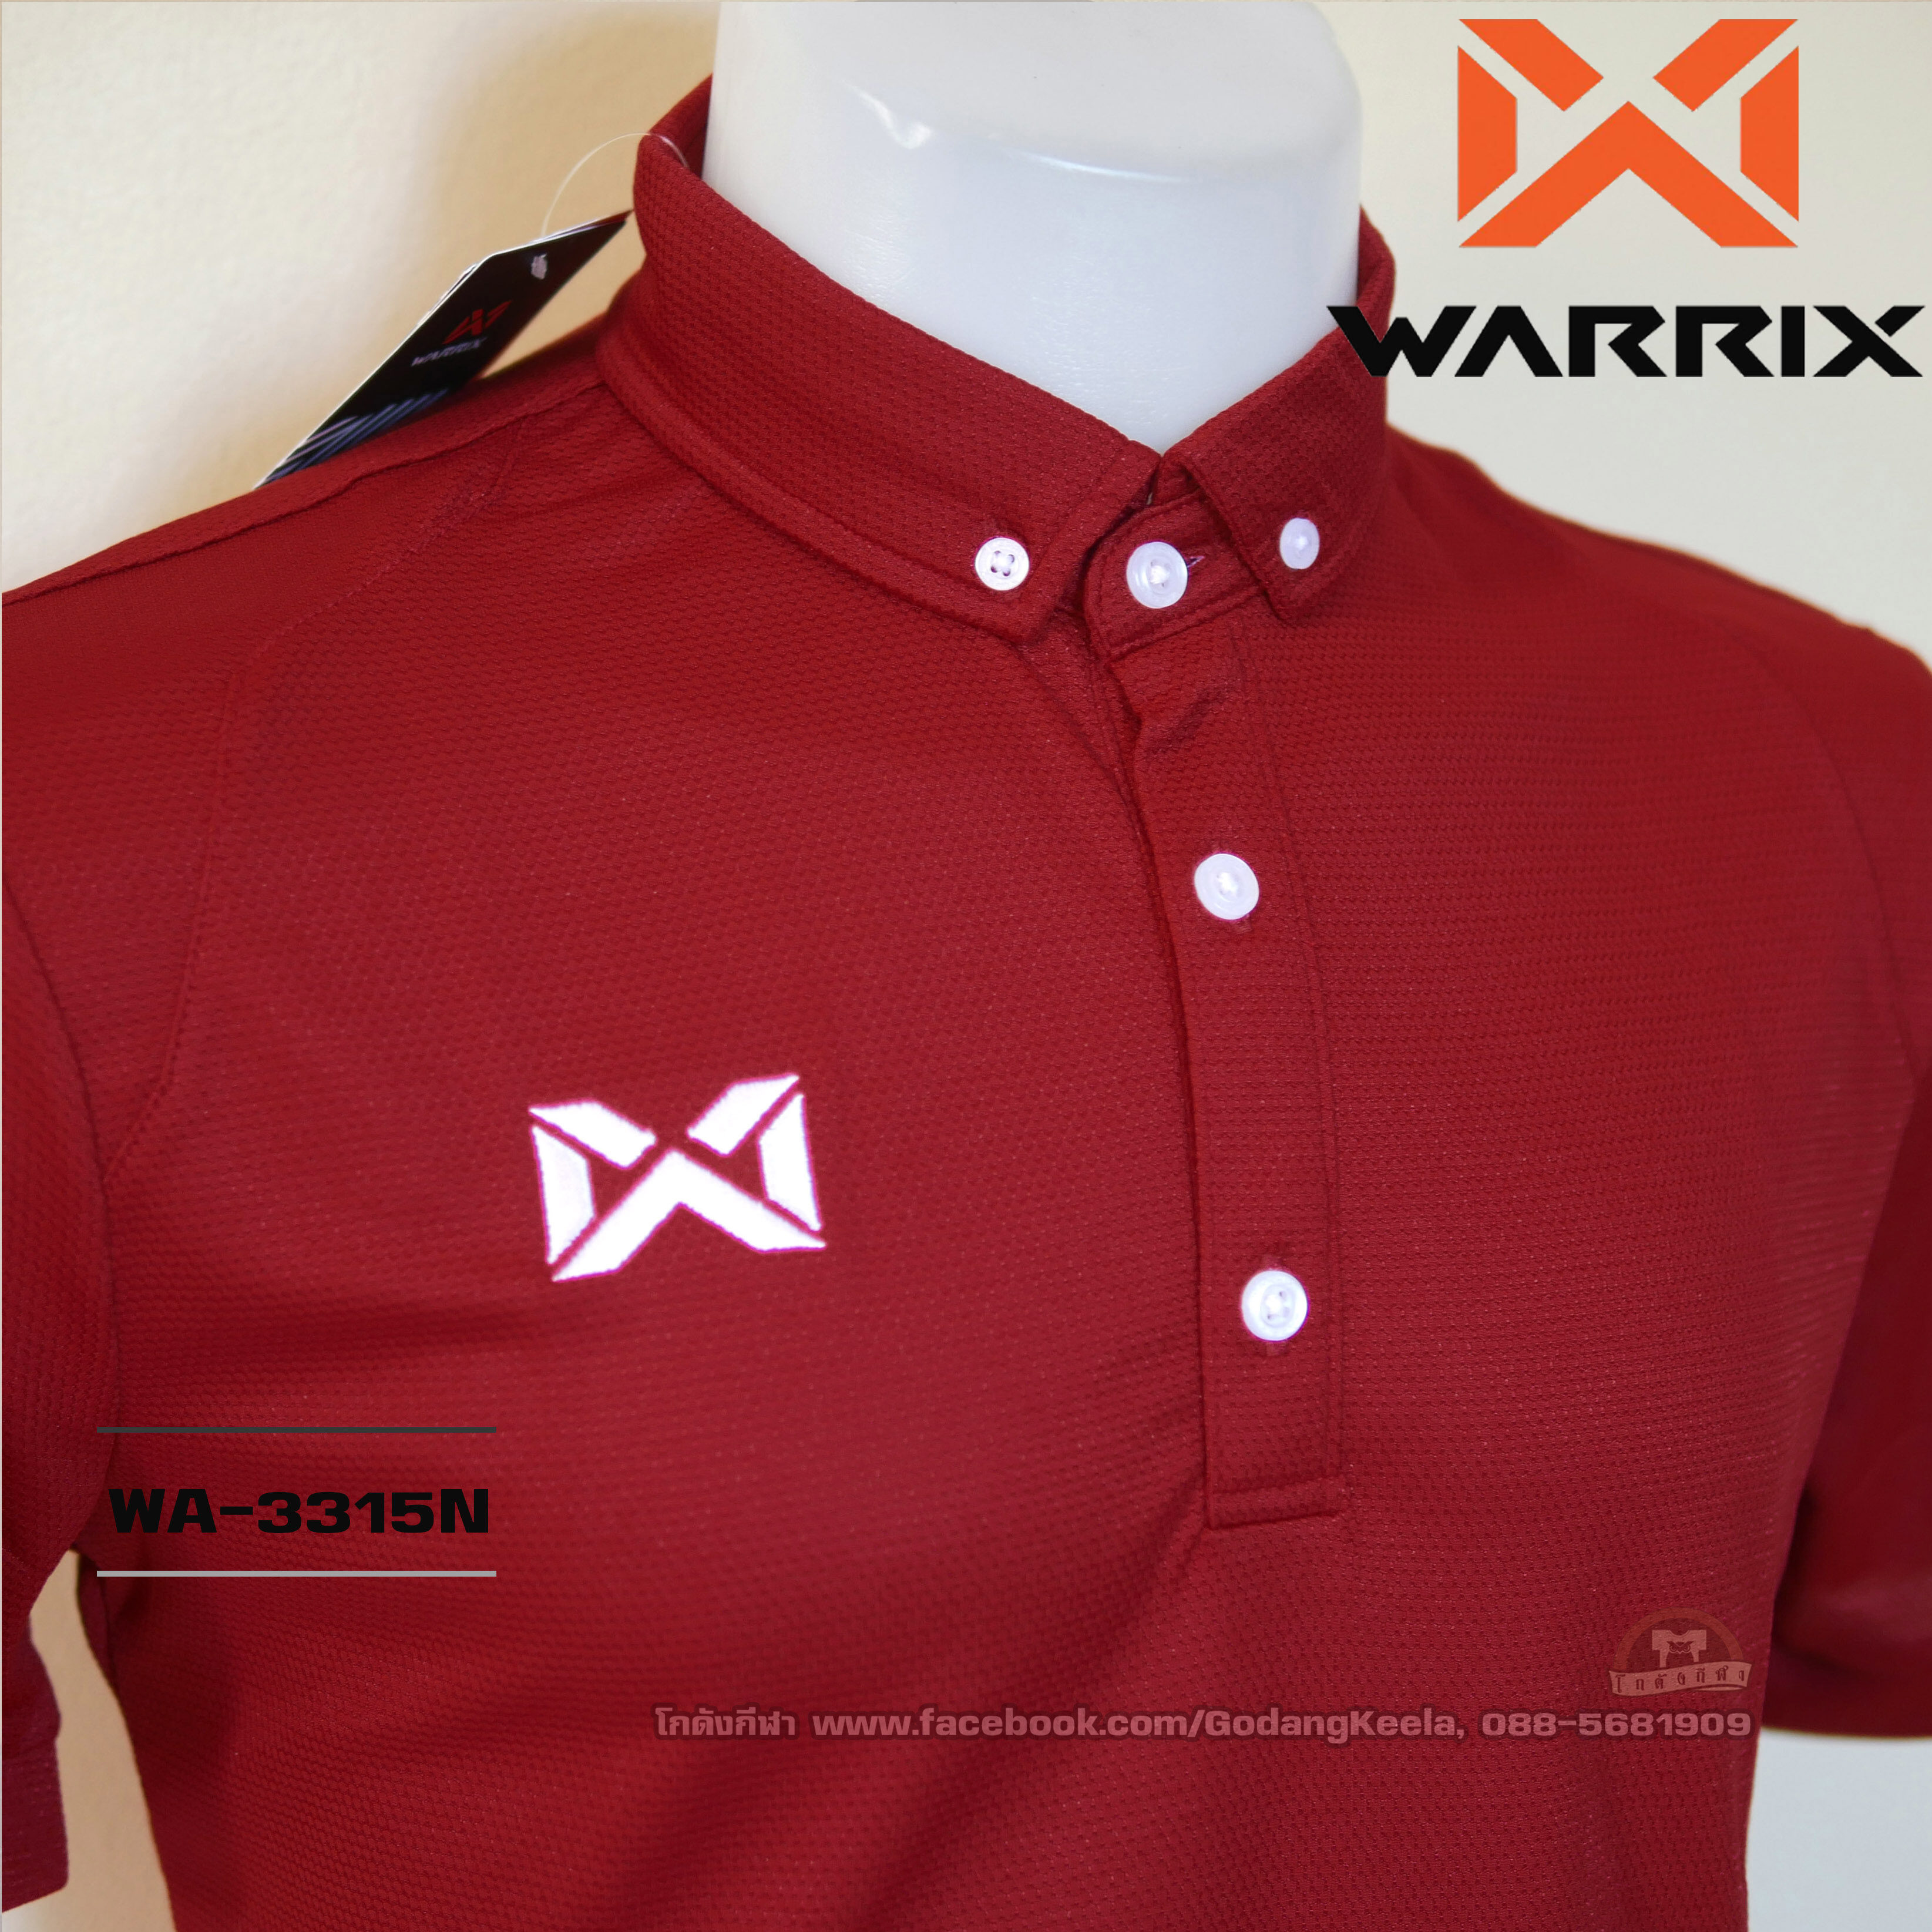 WARRIX เสื้อโปโล WA-3315N สีแดงเข้ม RT วอริกซ์ ของแท้ 100%